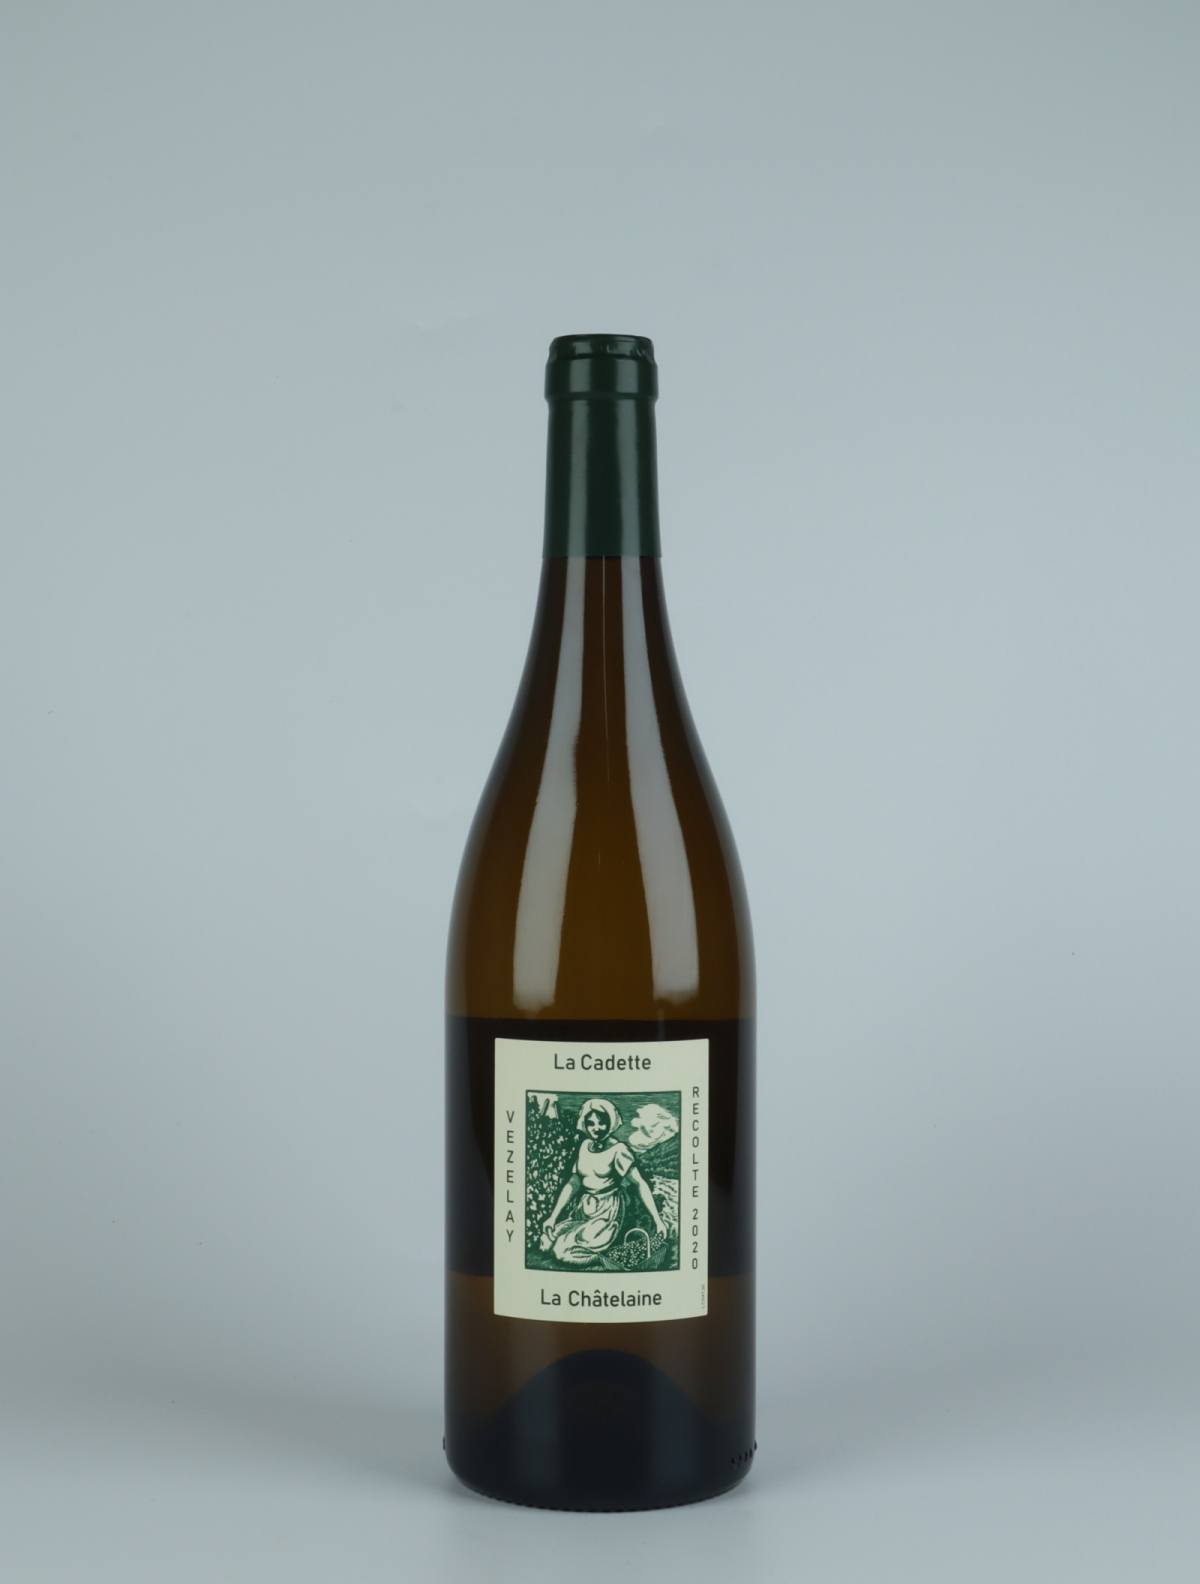 A bottle 2020 Bourgogne Vézelay - La Châtelaine White wine from Domaine de la Cadette, Burgundy in France